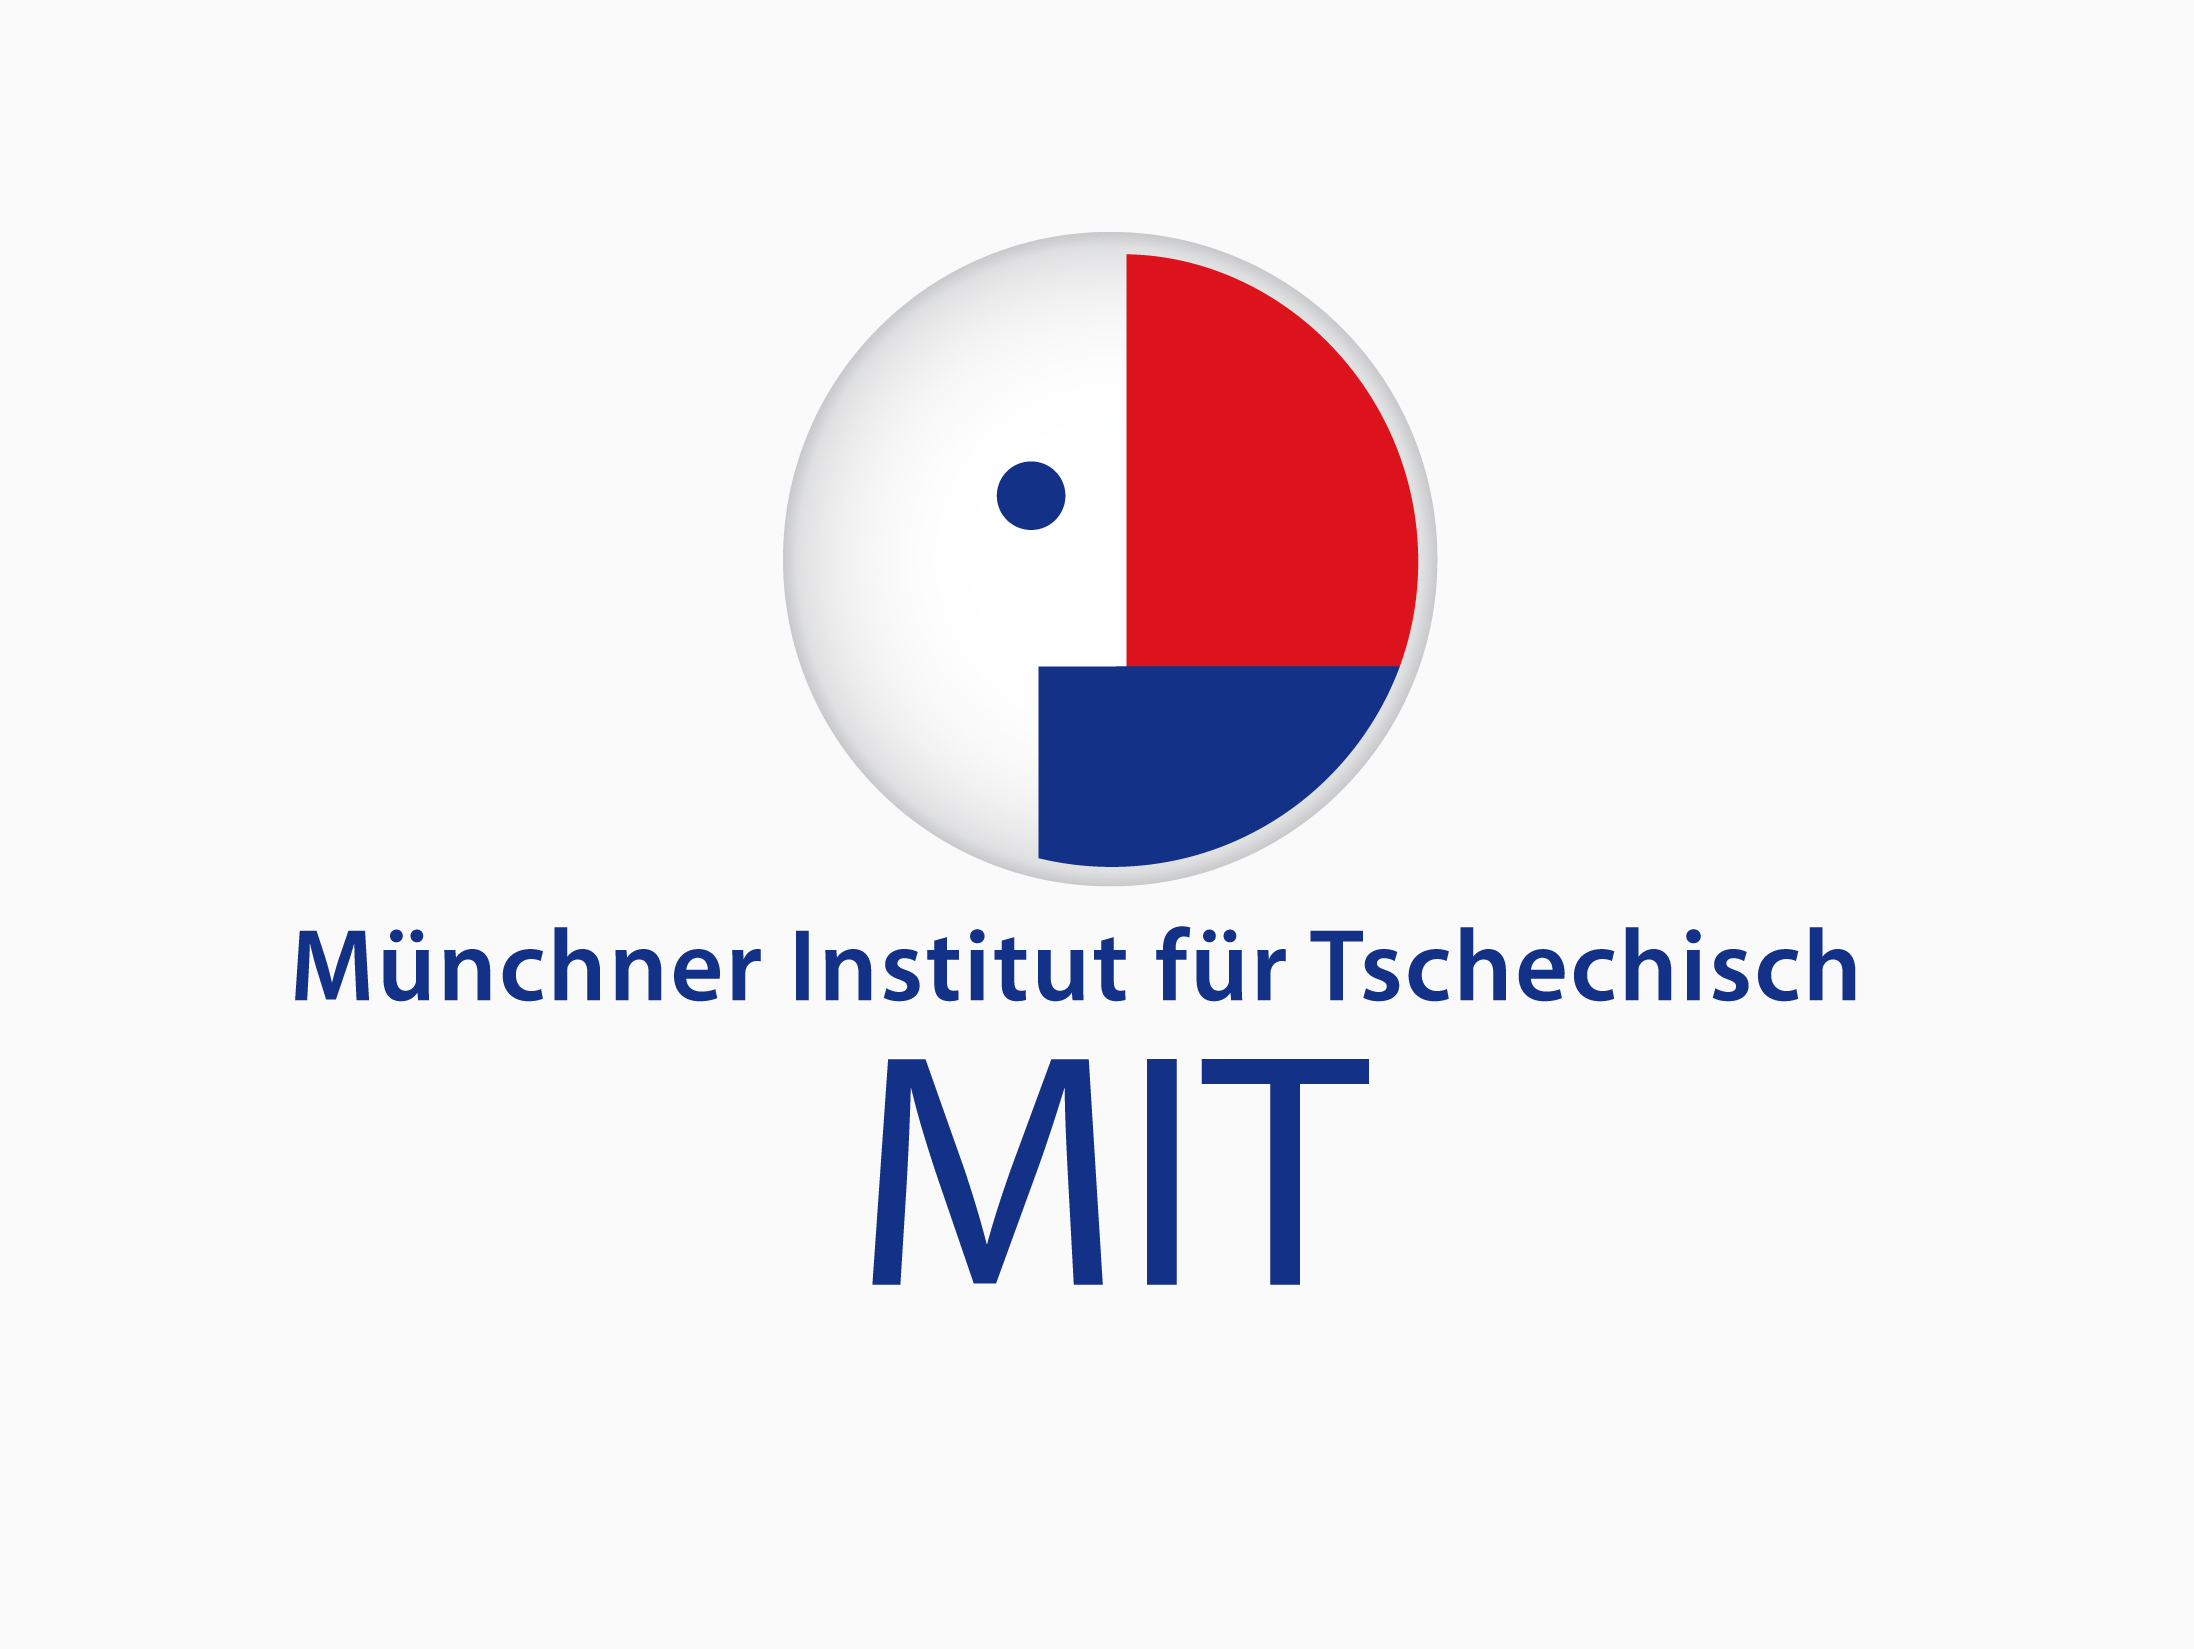 MIT Münchner Institut fürTschechisch, Tschechischkurse,München